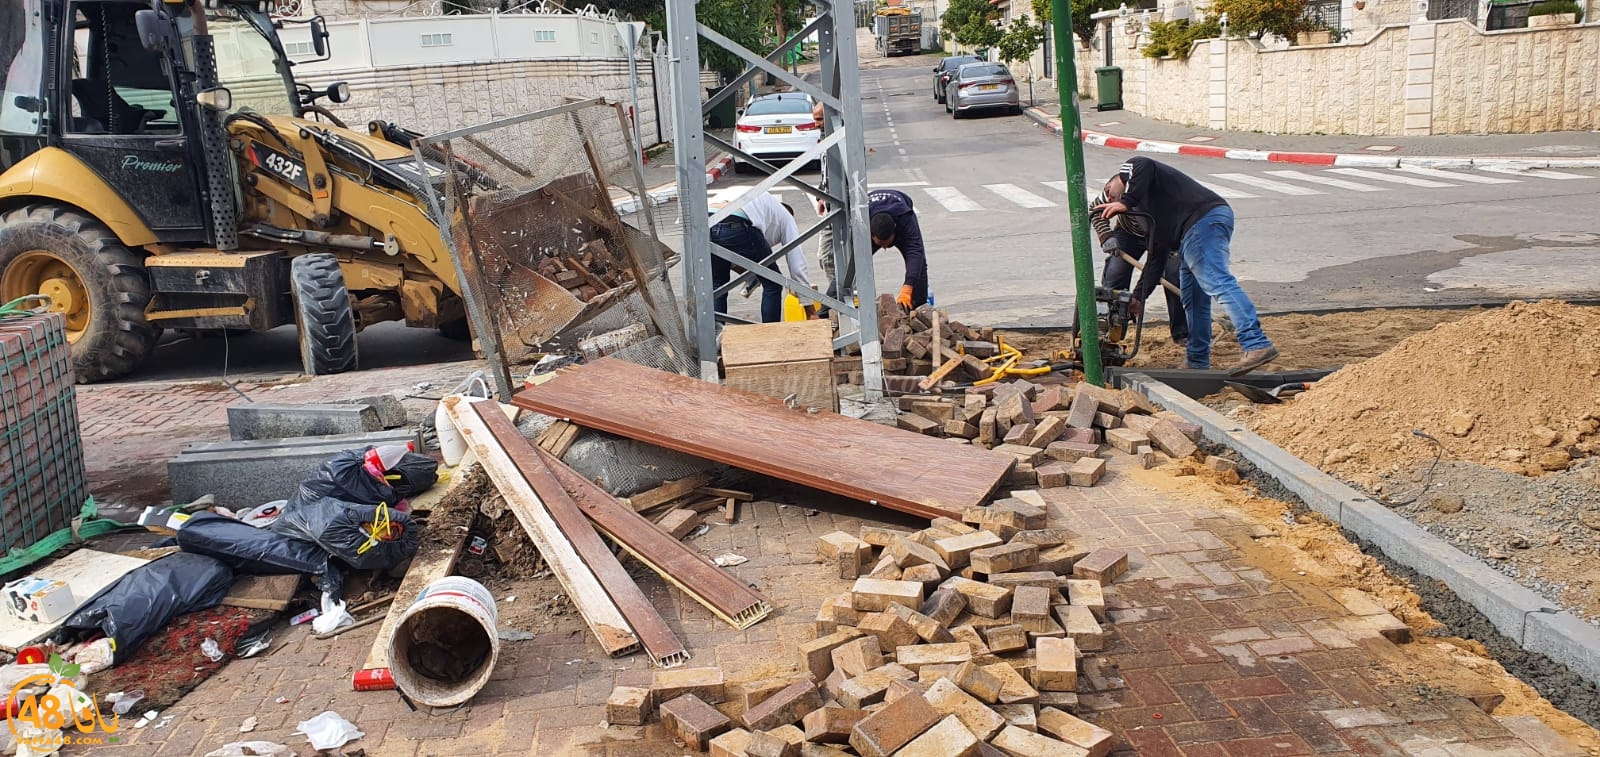  اللد: البلدية تُباشر بأعمال ترميم في شوارع حي الواحة الخضراء 